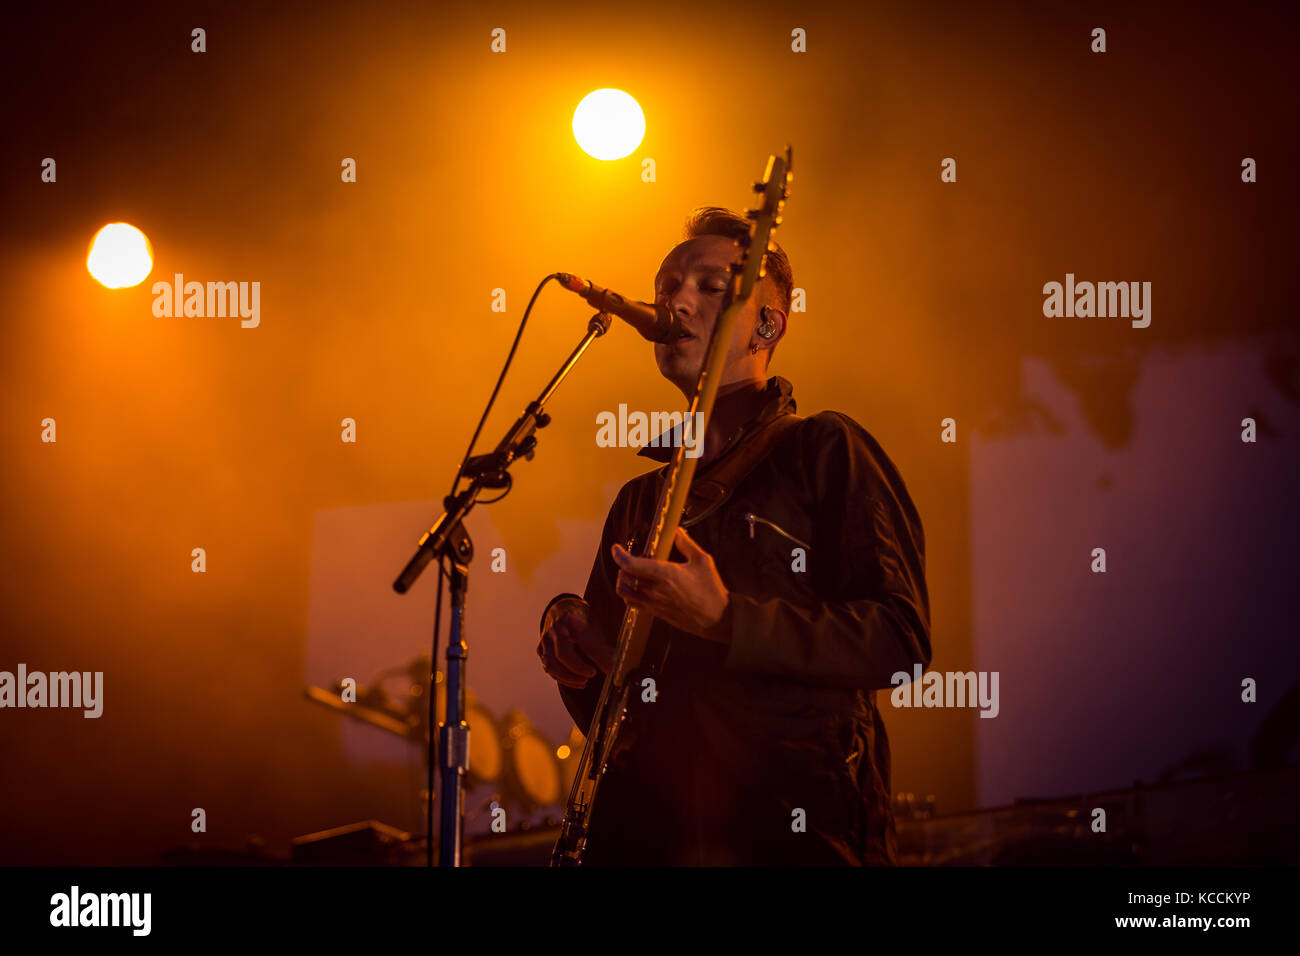 Norvegia, Oslo – 10 agosto 2017. La band indie elettronica inglese The xx esegue un concerto dal vivo durante il festival musicale norvegese Øyafestivalen 2017 a Oslo. Qui il bassista Oliver SIM è visto dal vivo sul palco. Foto Stock